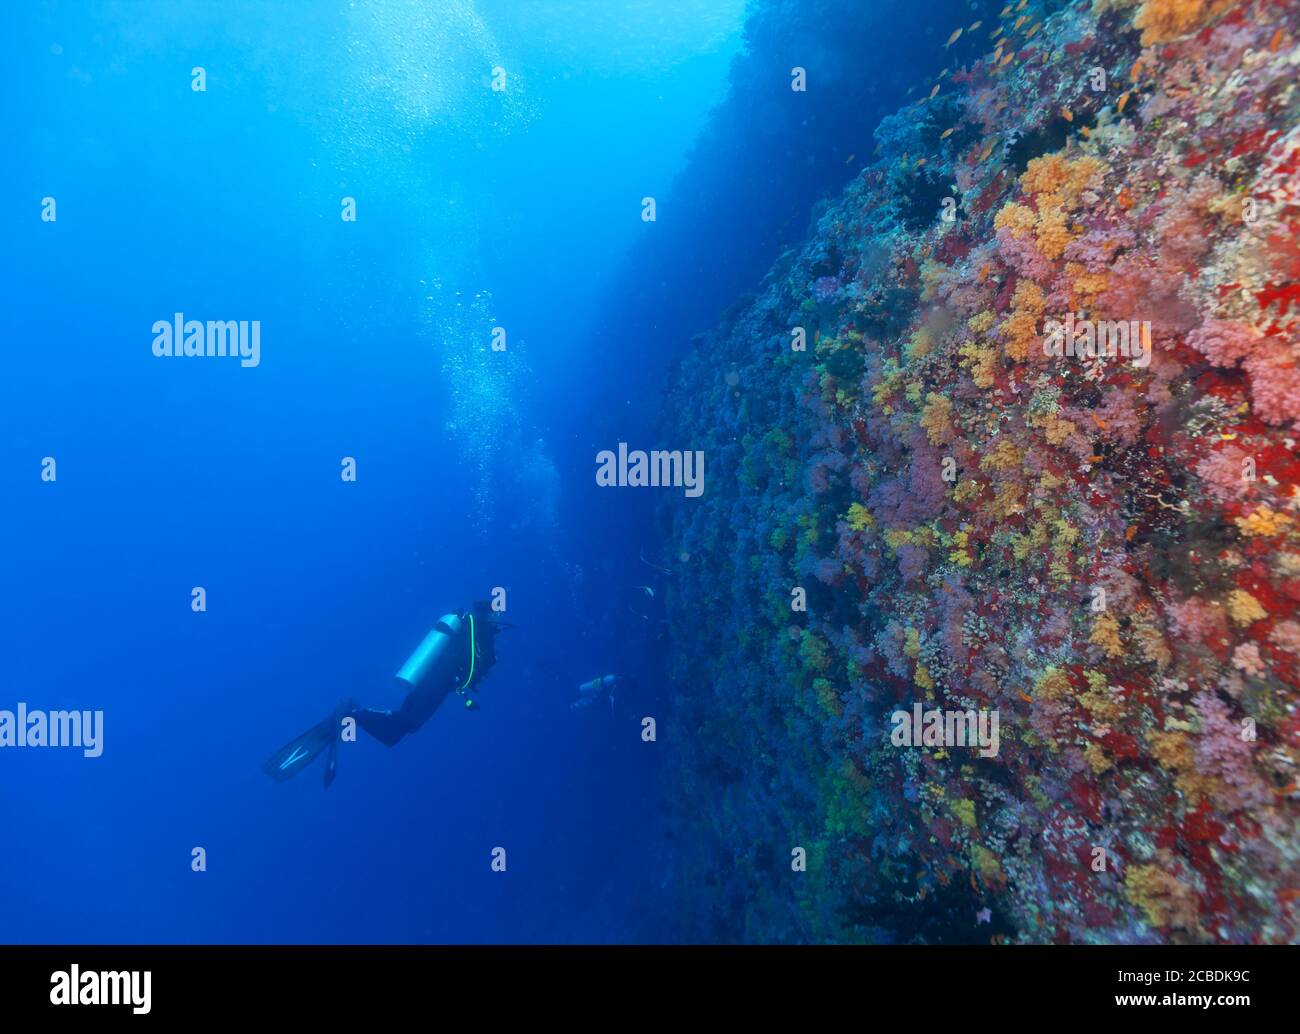 Junge Frau Scuba diver Erkundung Coral Reef, Unterwasser Aktivitäten Stockfoto